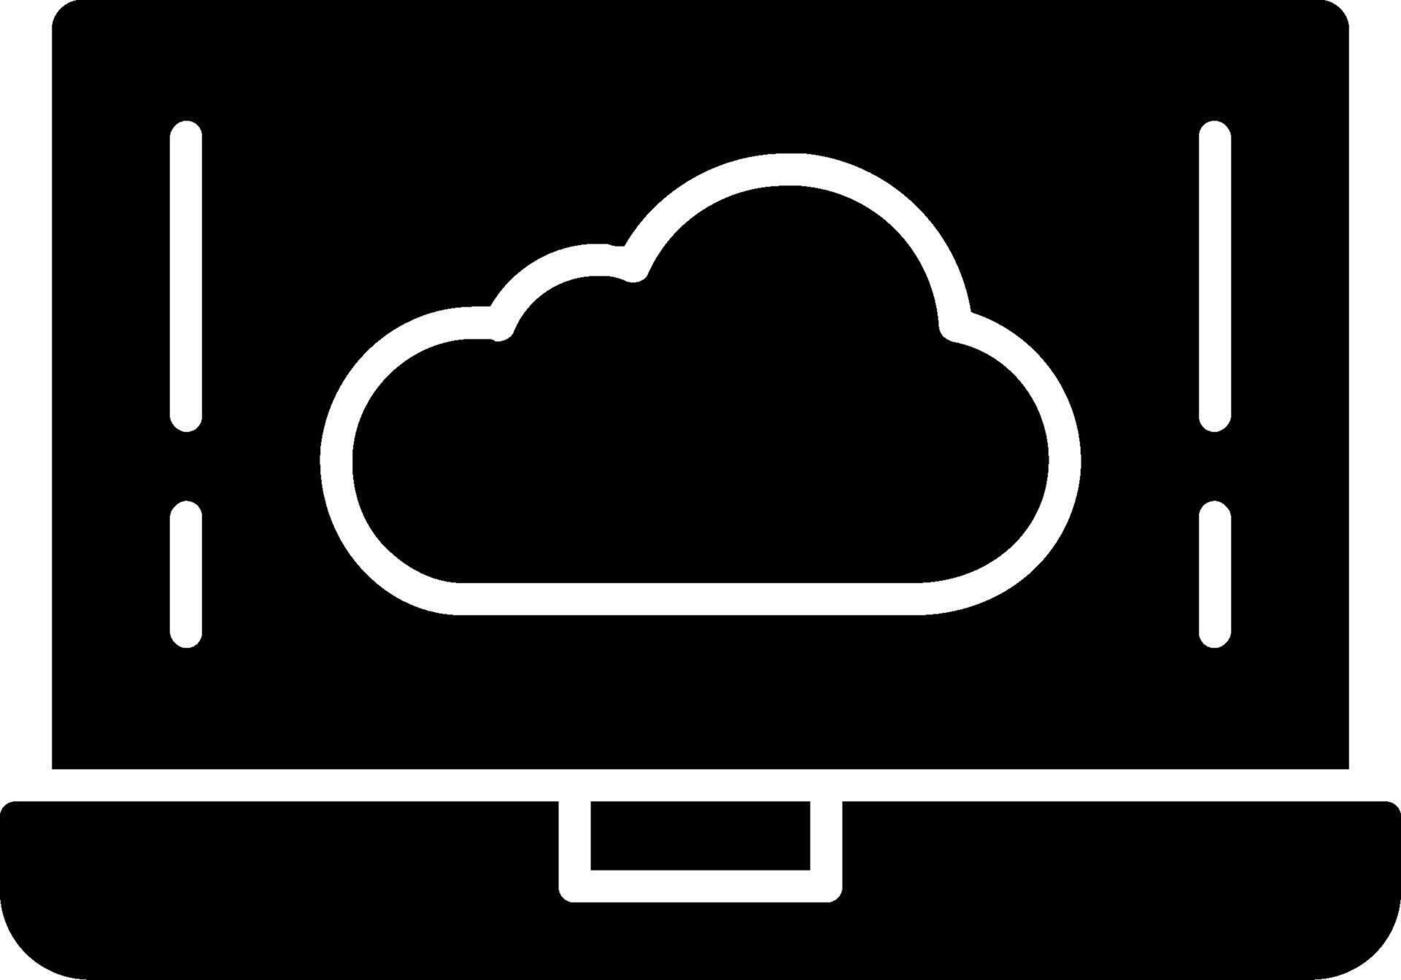 Cloud Glyph Icon vector